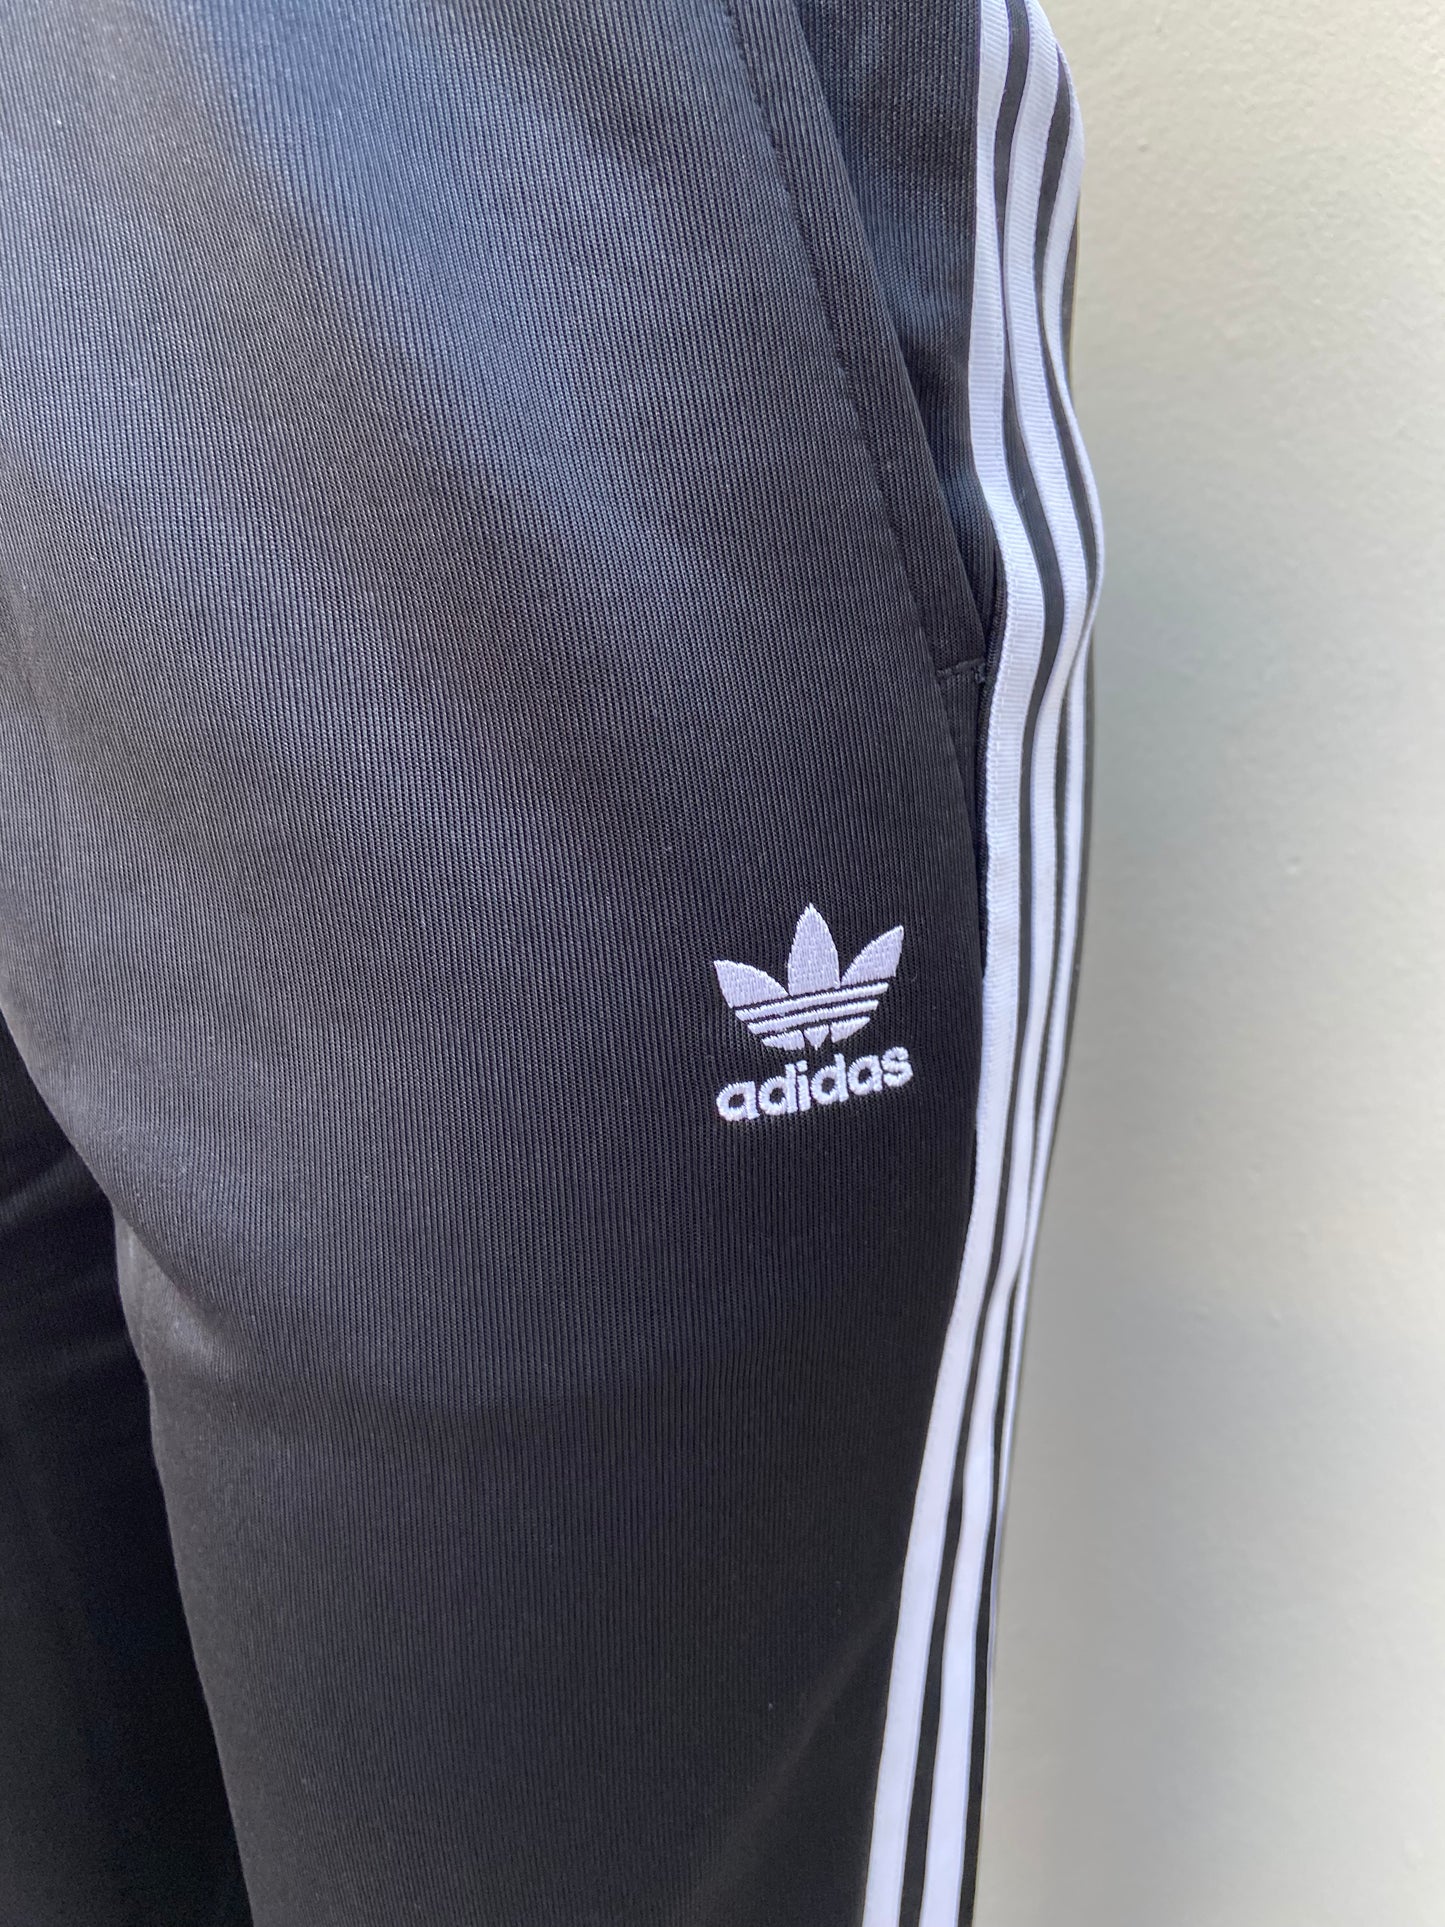 Pantalon Adidas original de color negro en tela deportiva con bolsillo a los lados diseño de letras y logo ADIDAS a un lado en color blanco con raya a los lados blanca y ruedo doblado